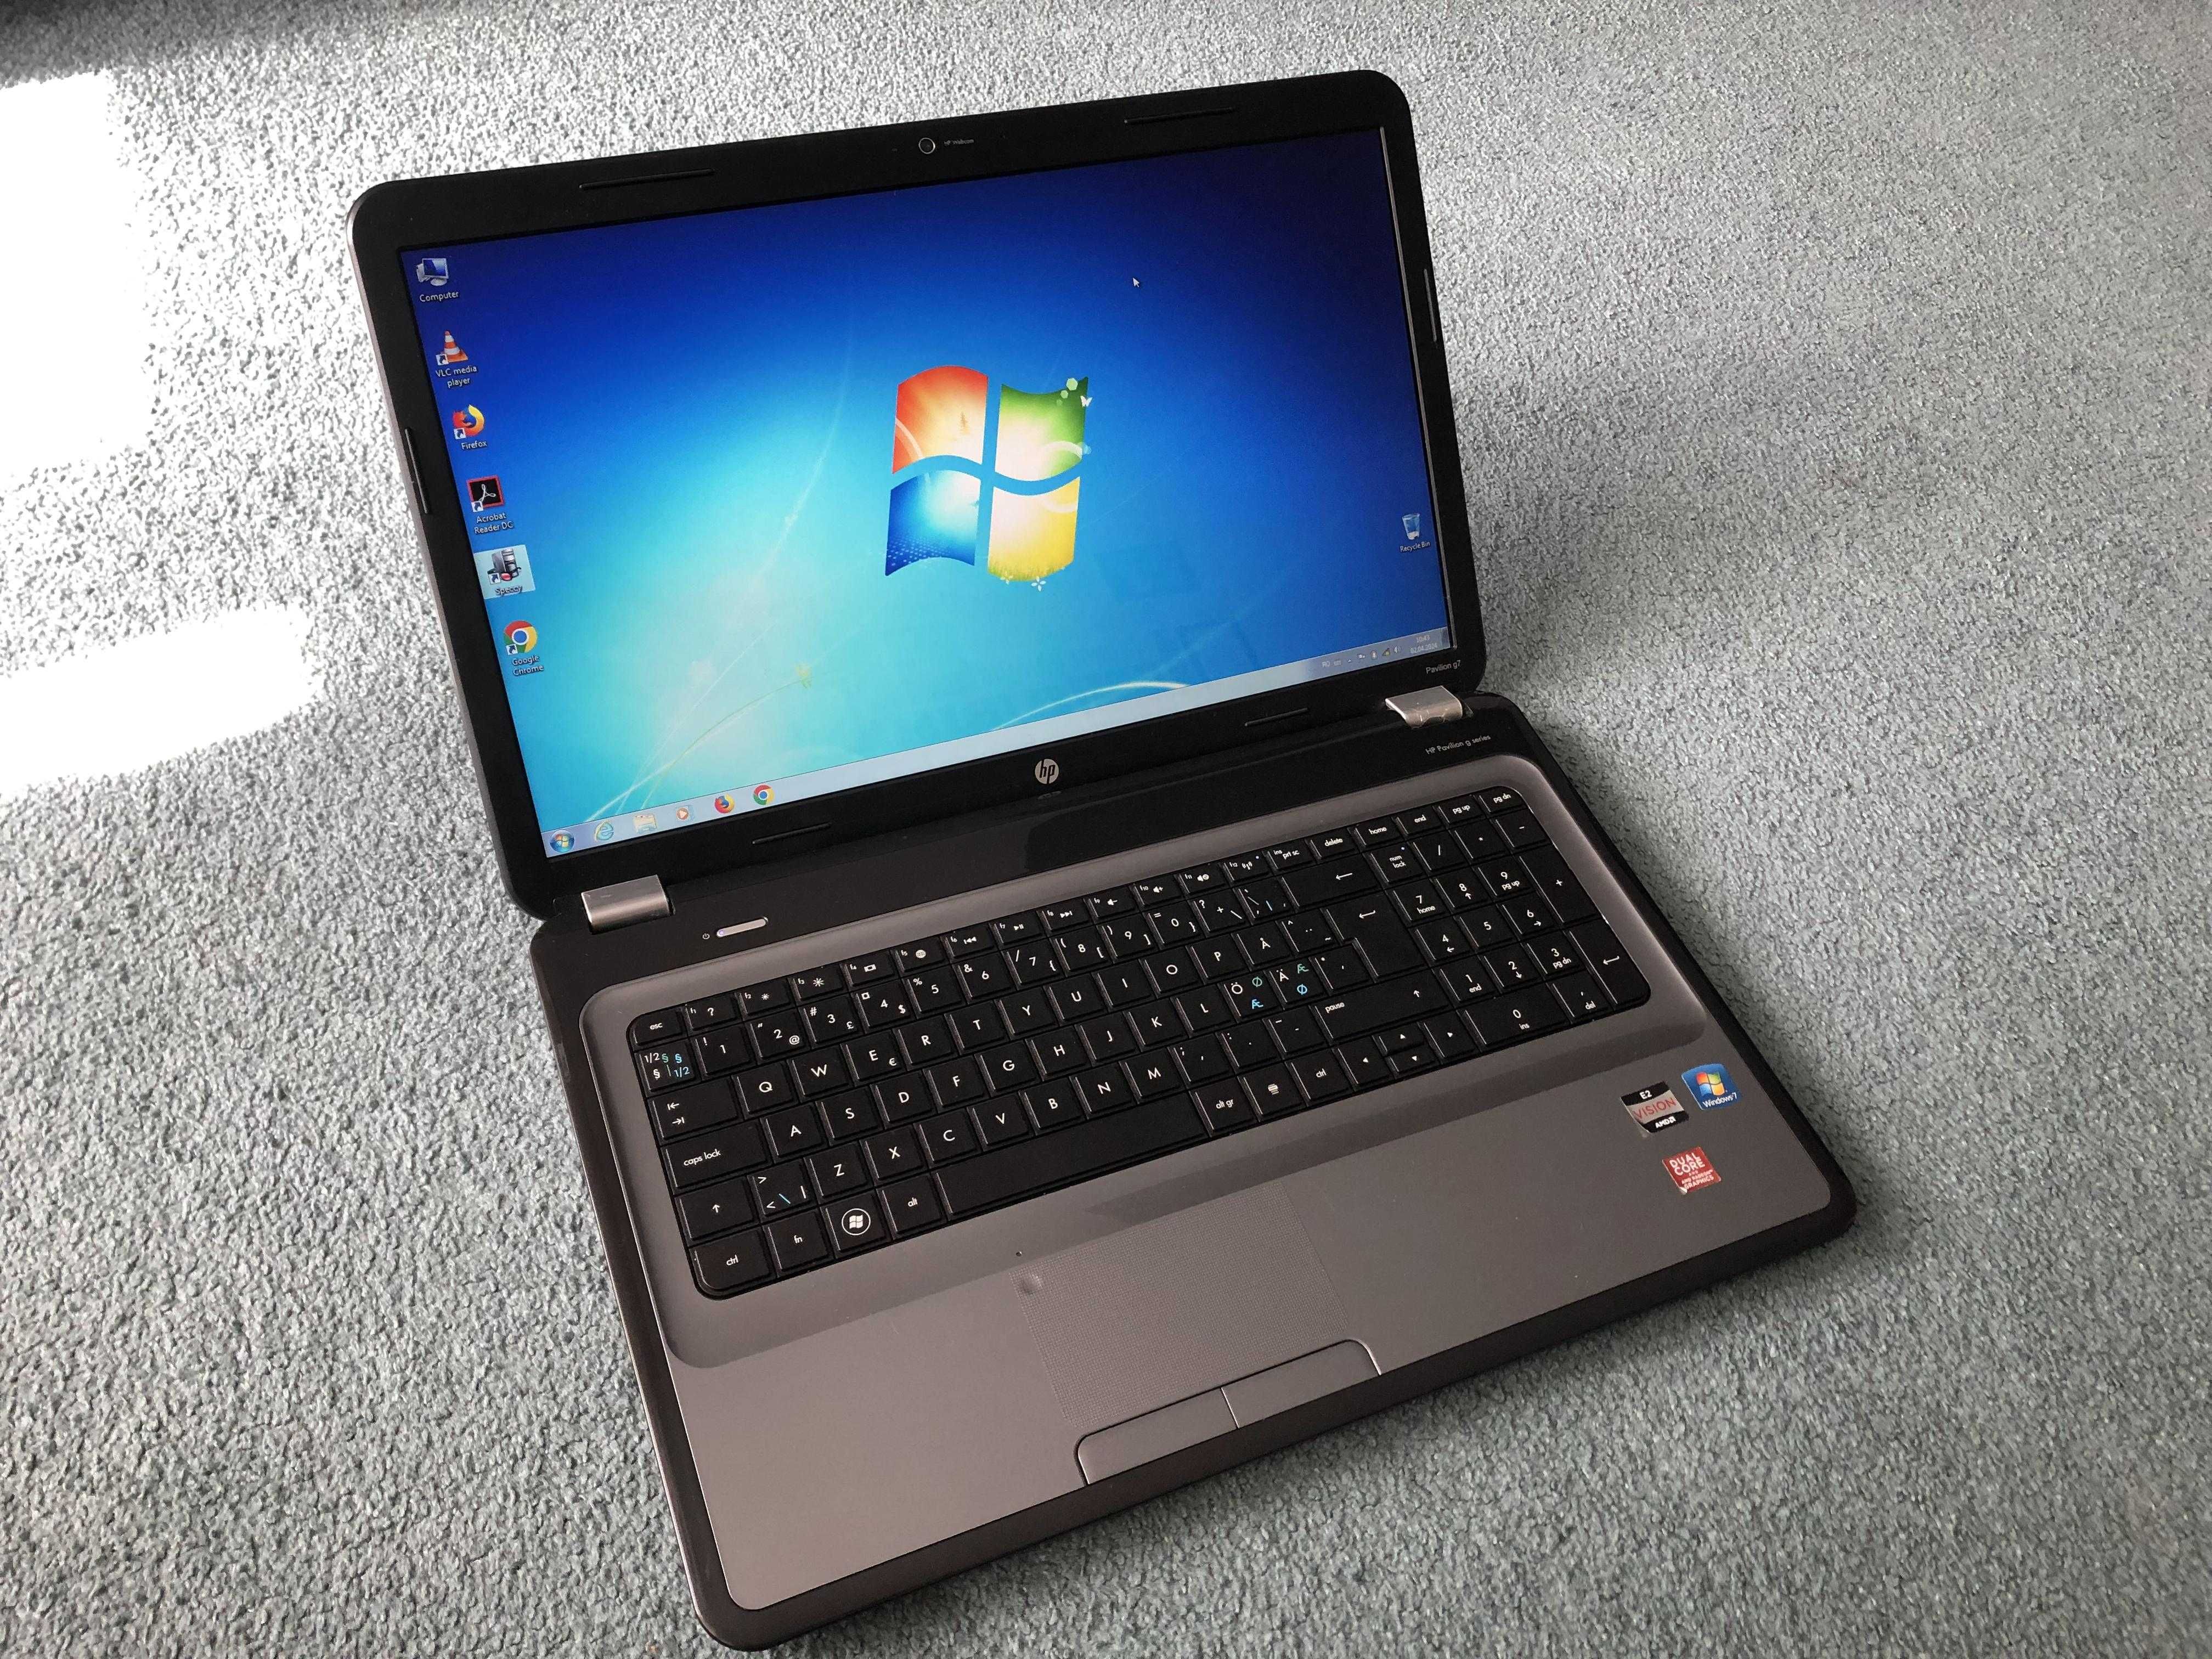 Laptop HP G7 AMD E2-3000M 1,8Ghz 4Gb 320Gb 17,3 Led HD+ video 512mb